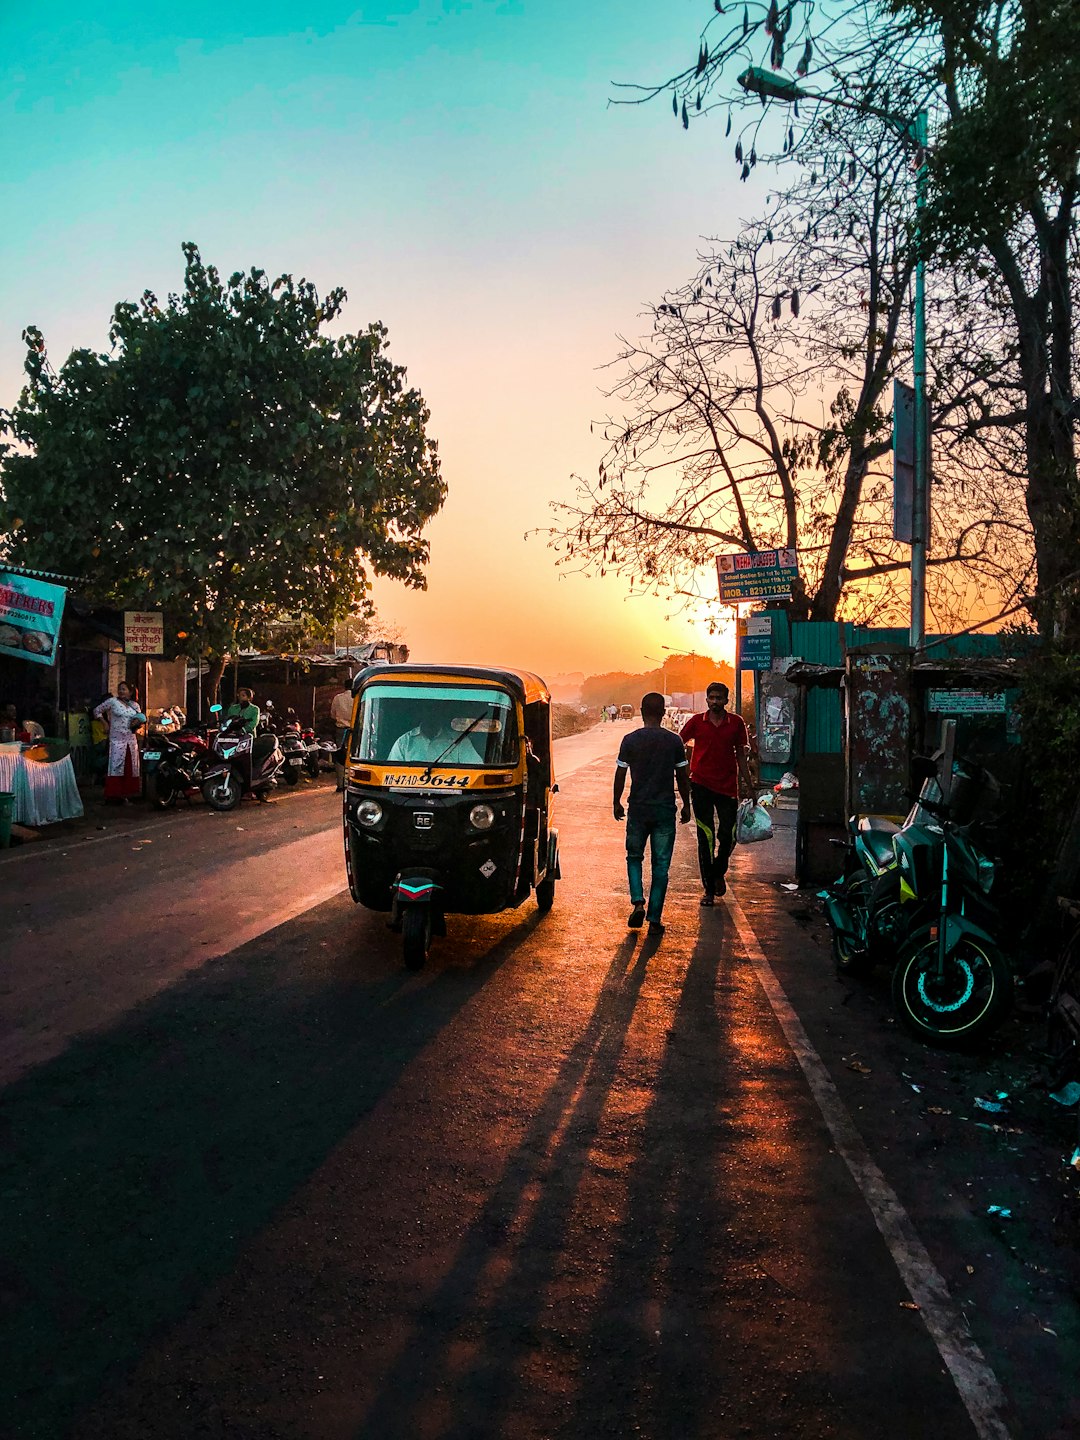 Sunset, A Rickshaw and two men walking. 